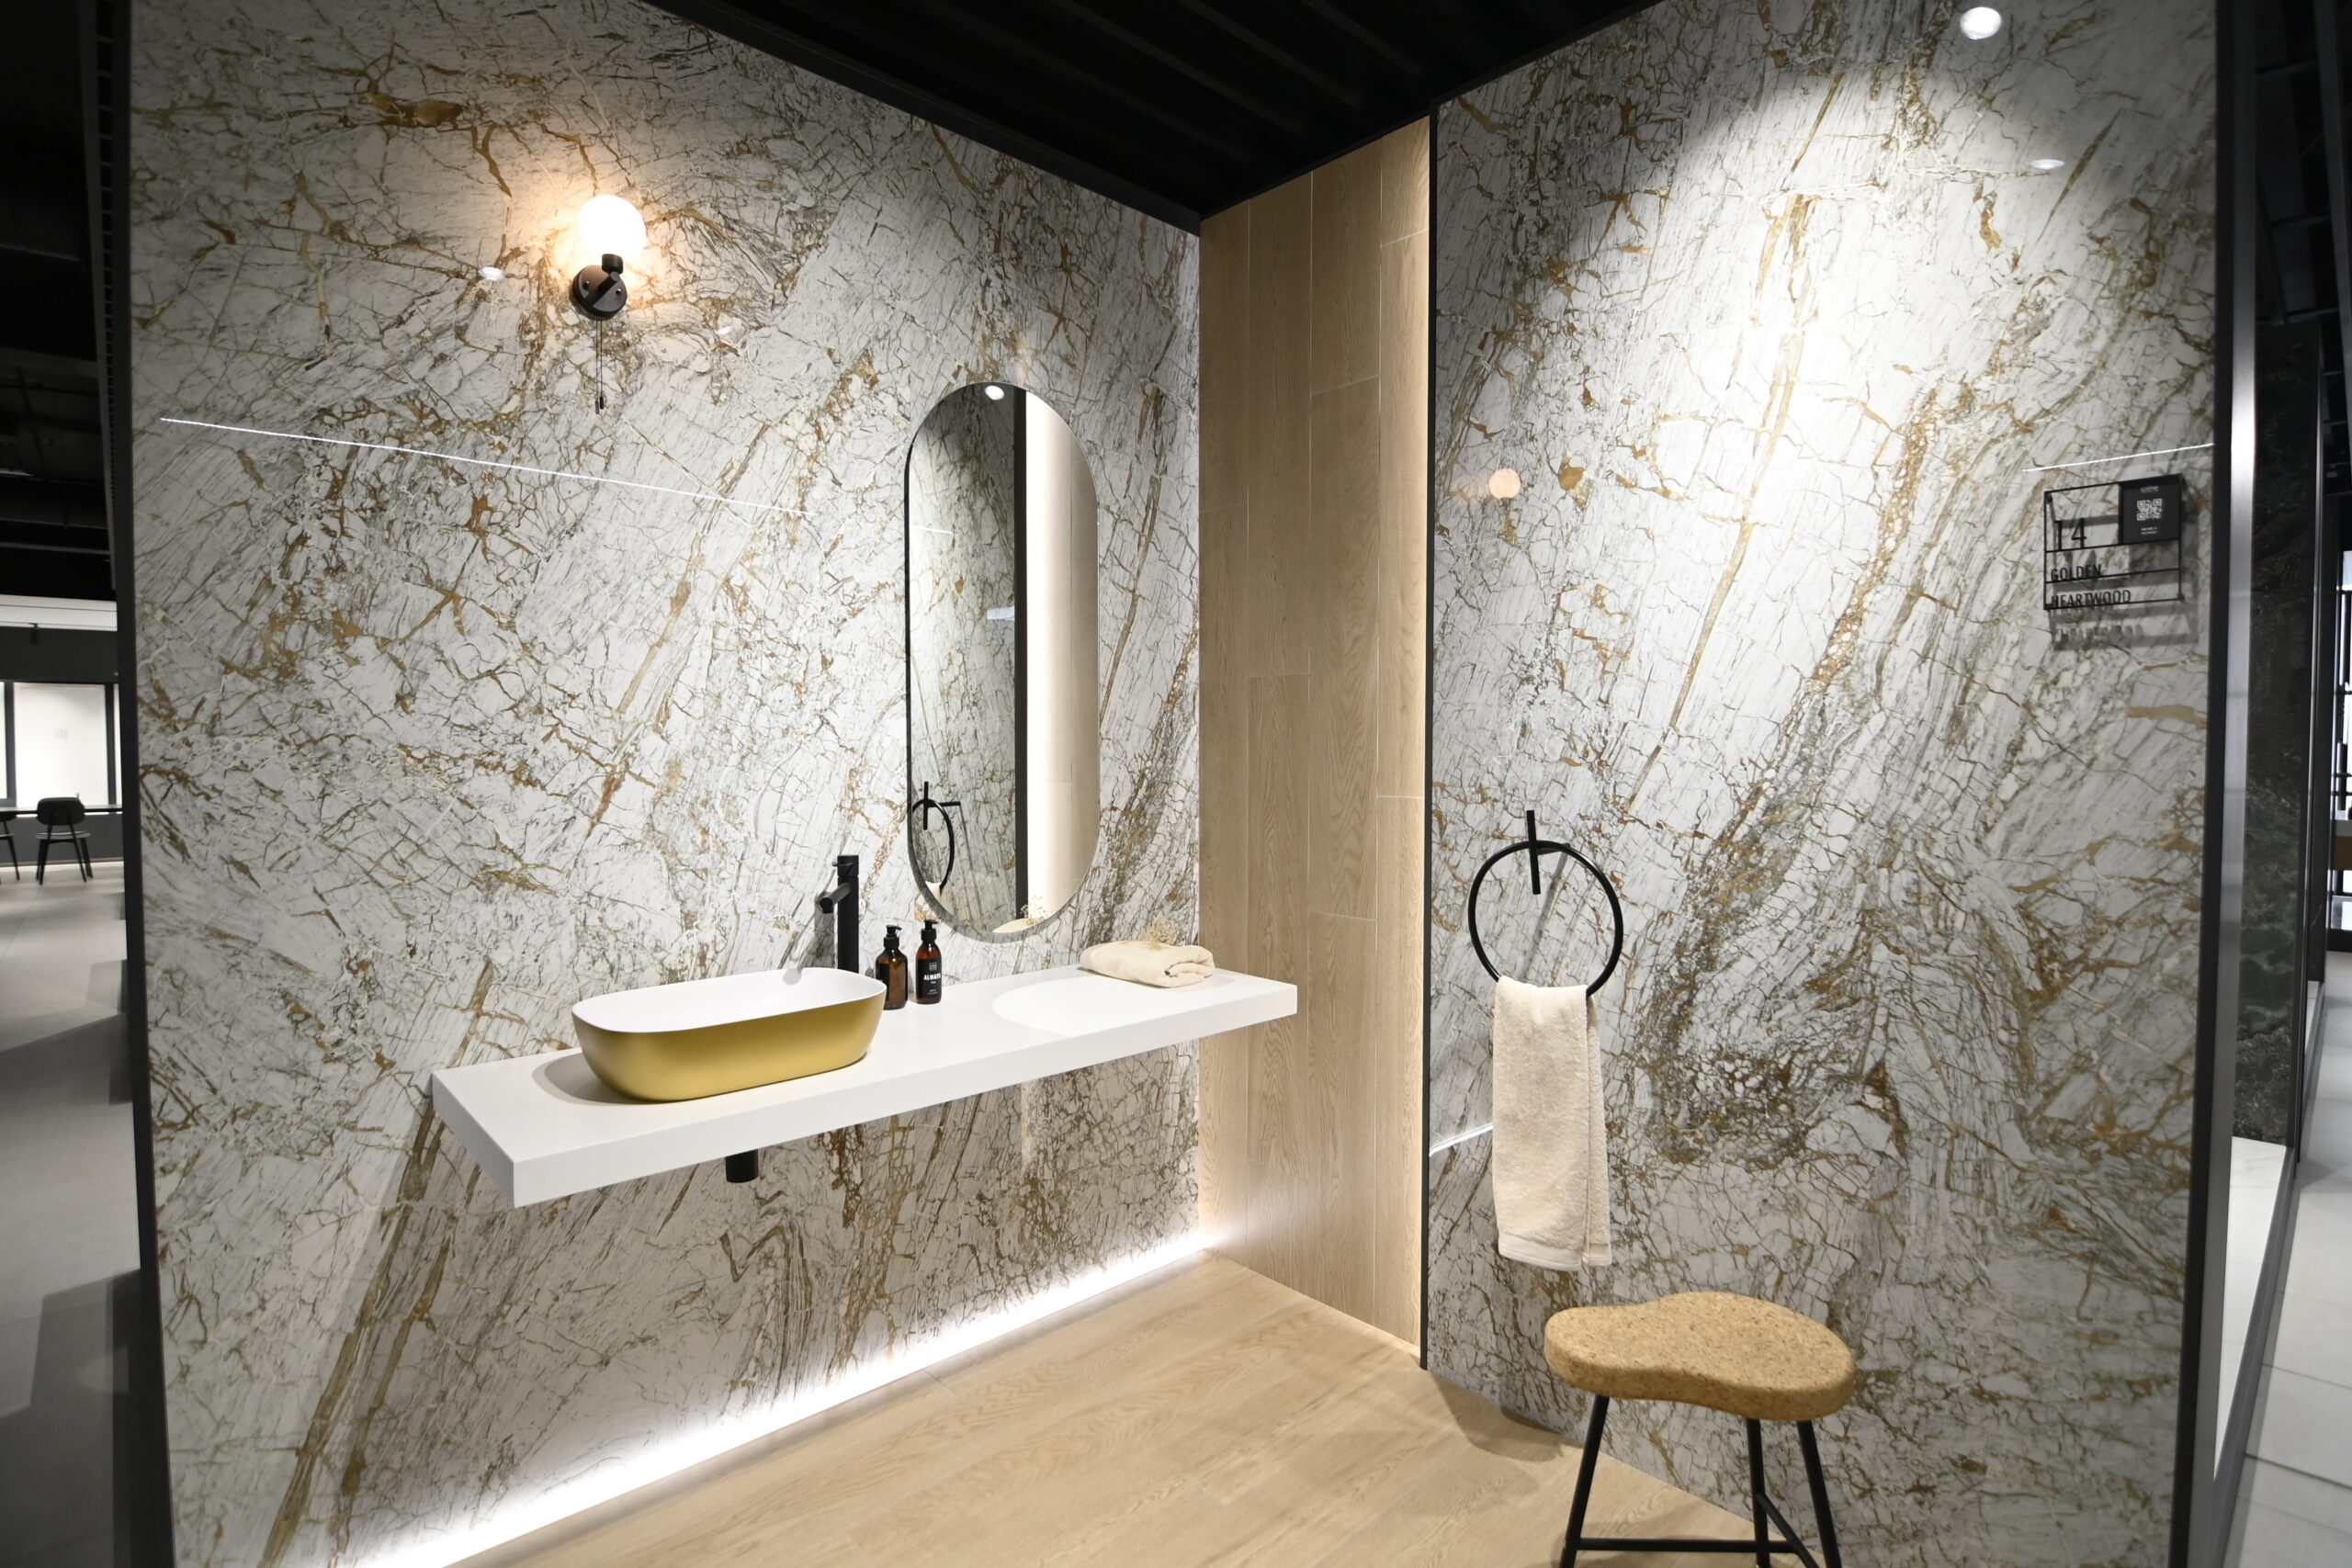 Baño moderno, detalles de lujo con perfiles luminosos, y gran toque de estilo a base de paredes de porcelánico efecto mármol y pavimento y detalles efecto madera.